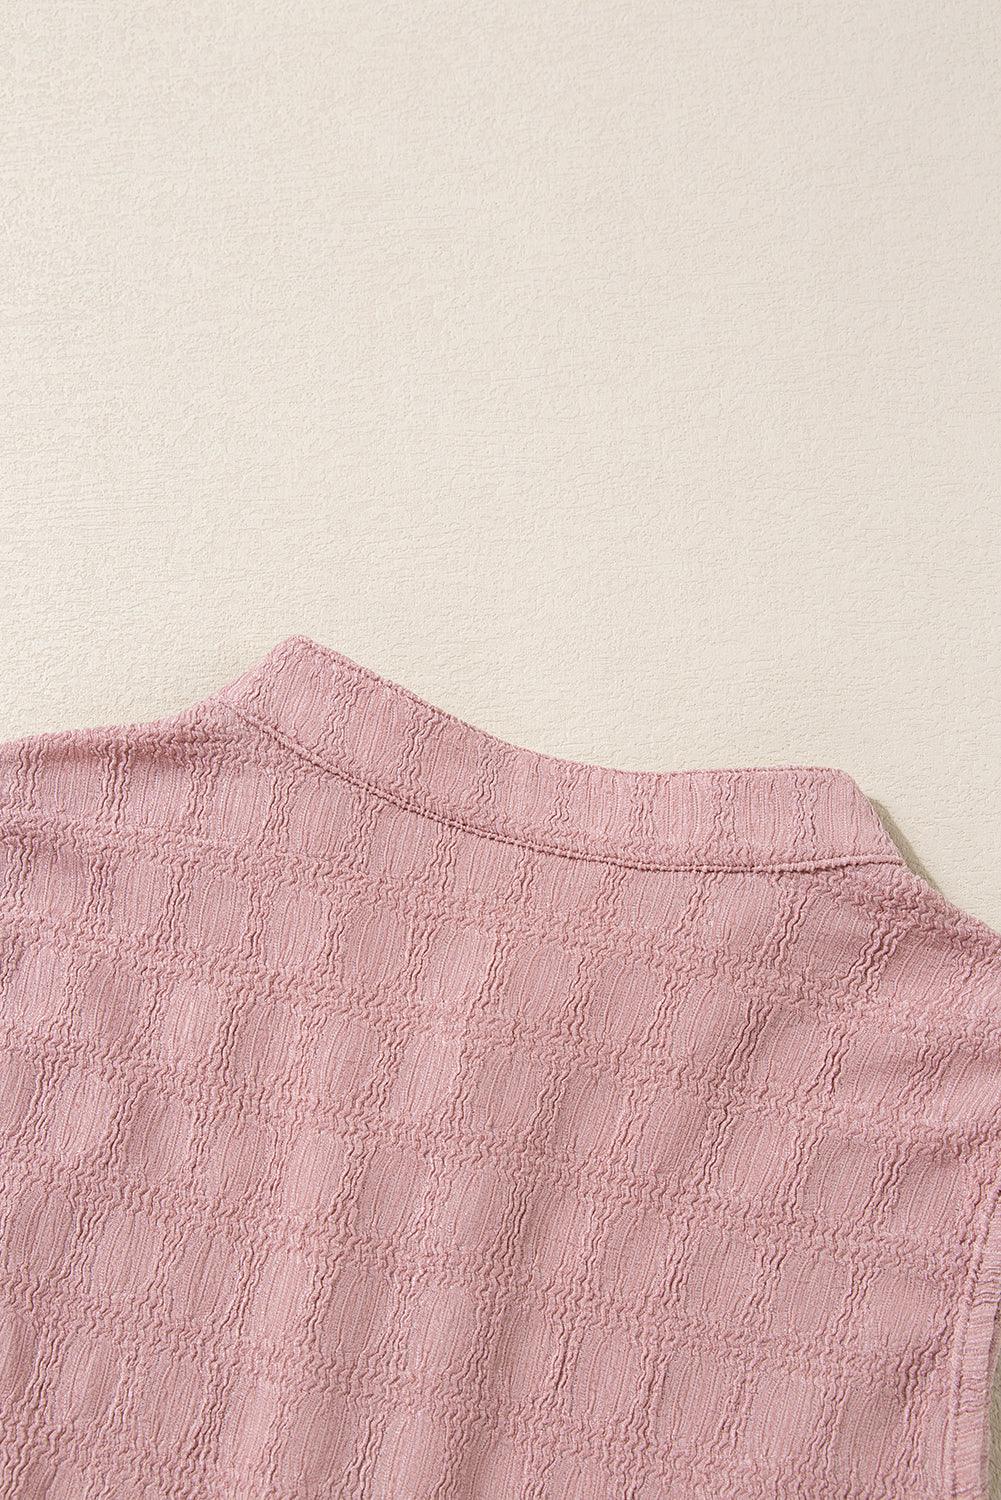 Pink Lattice Textured Split Neck Sleeveless Summer Tank Top